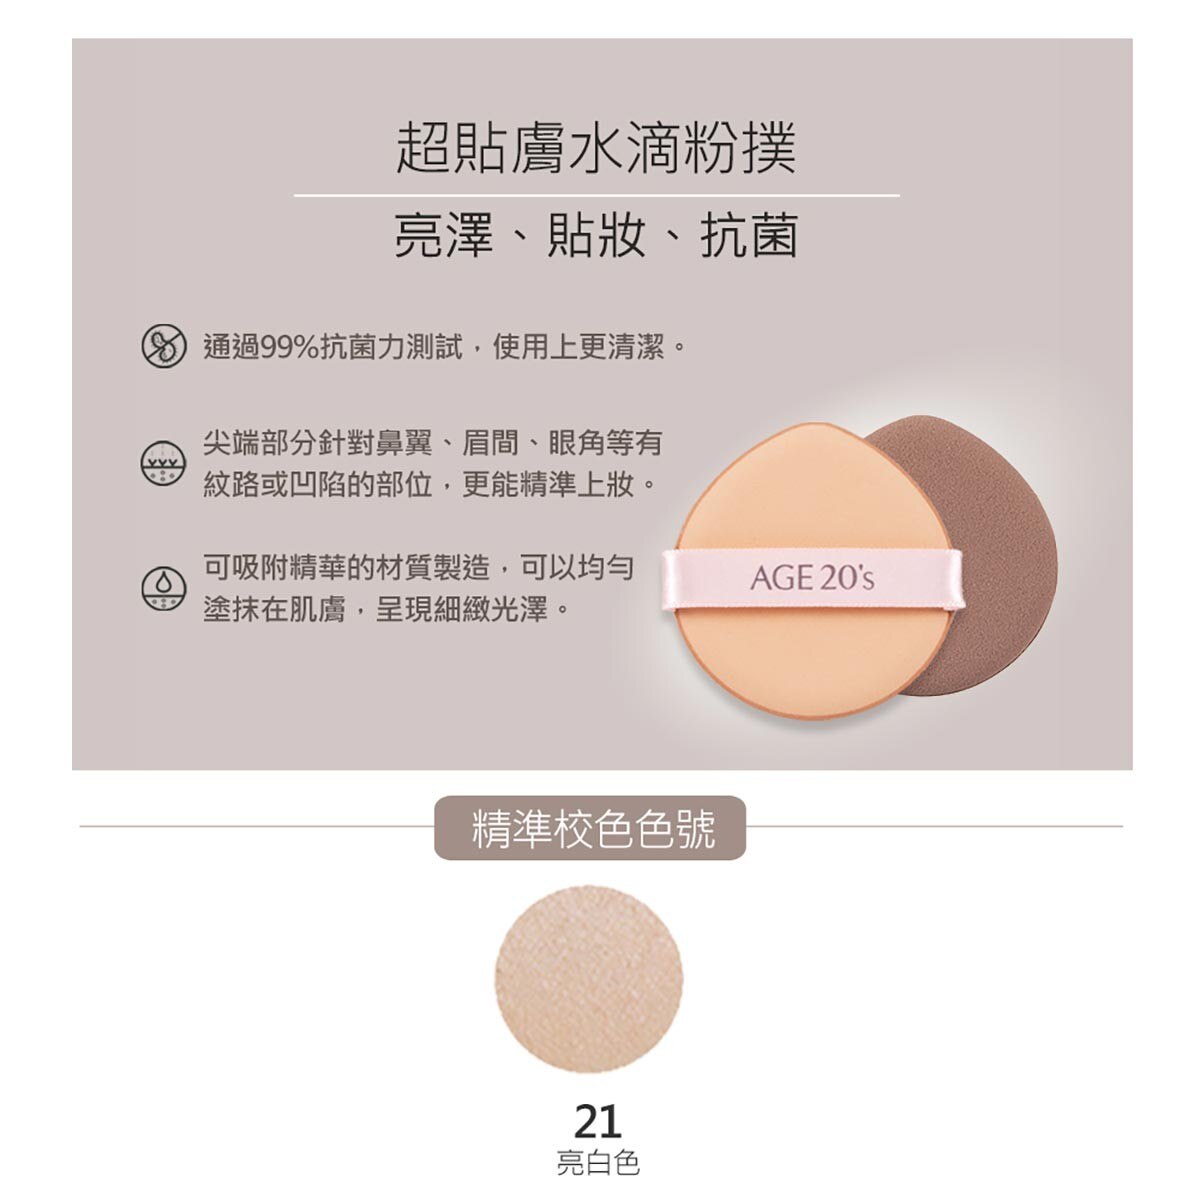 AGE20's 瓷透肌聚焦爆水粉餅(色號21保濕亮白)保養上妝一次完成，長效持妝，膚觸上輕薄不厚重。